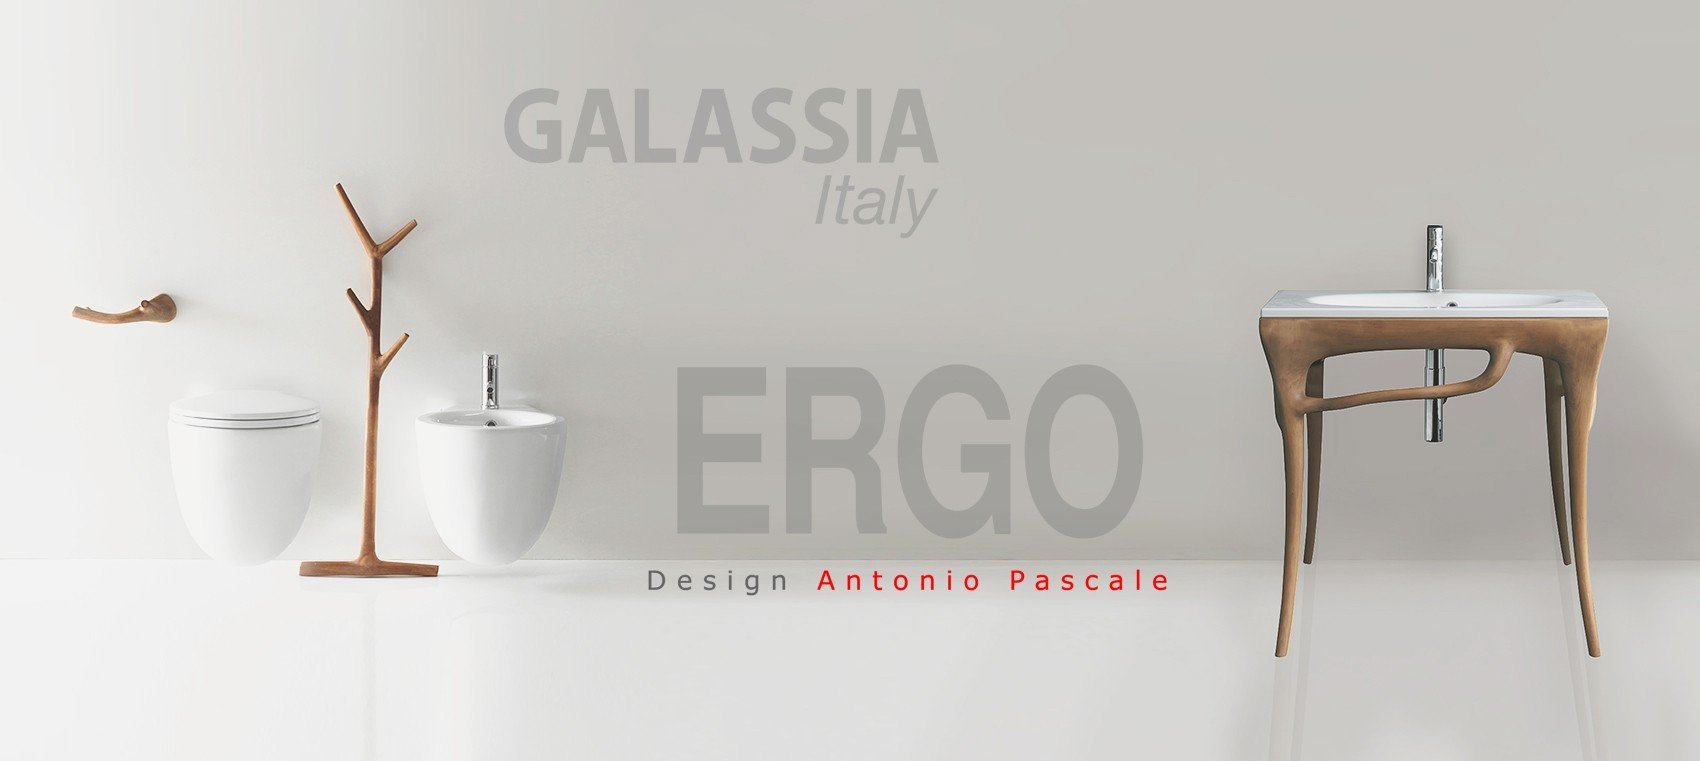 Коллекция сантехники Ergo - GALASSIA (Италия)